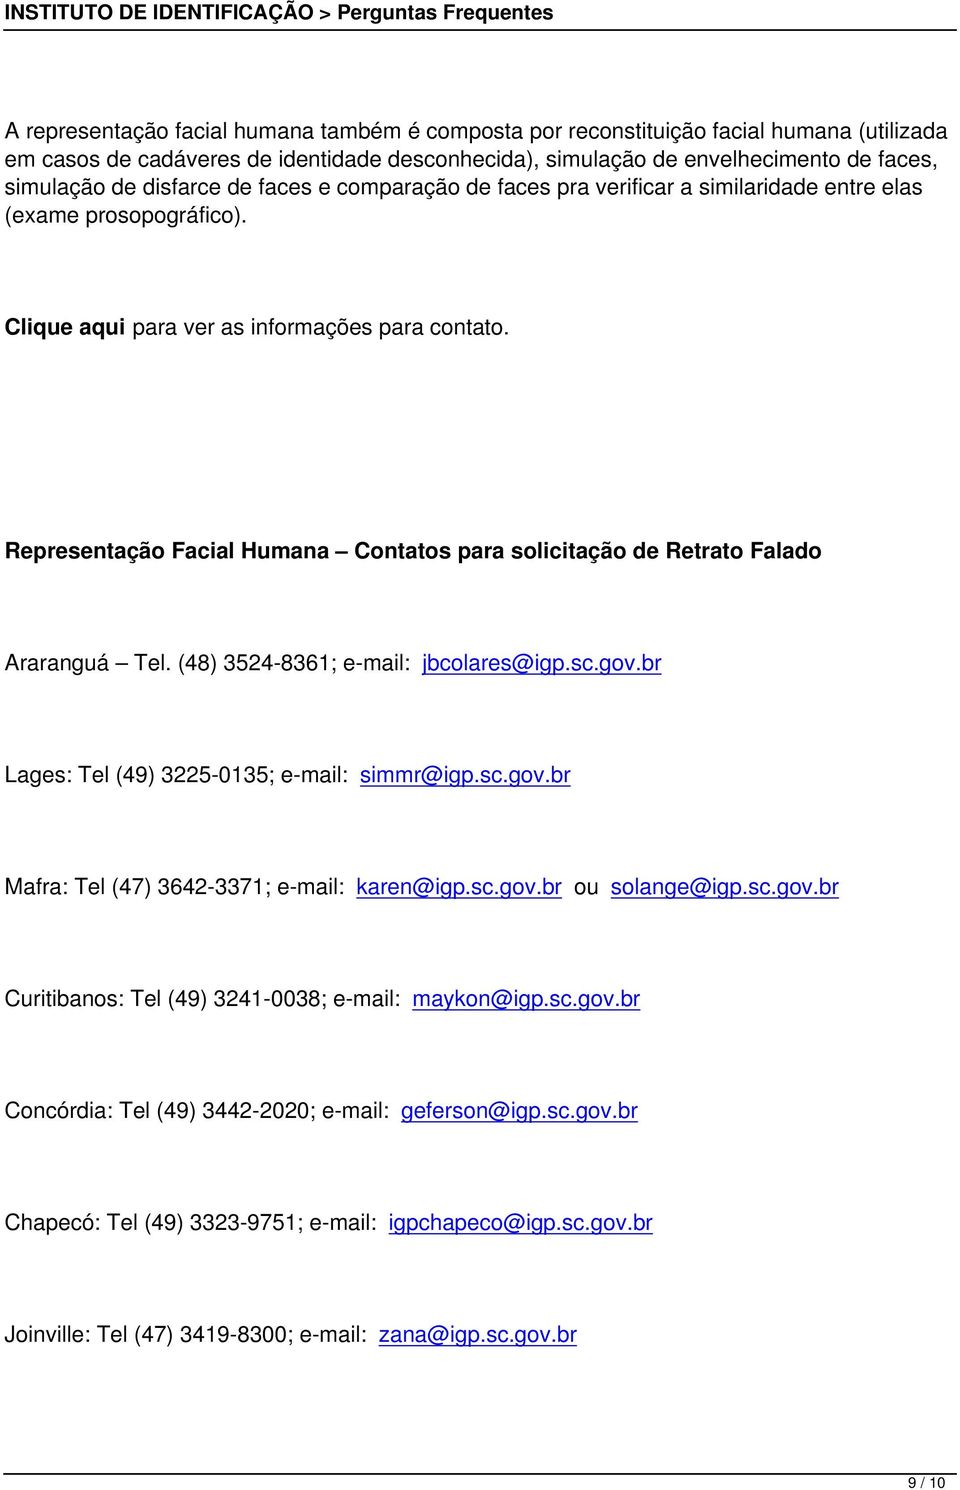 Representação Facial Humana Contatos para solicitação de Retrato Falado Araranguá Tel. (48) 3524-8361; e-mail: jbcolares@igp.sc.gov.br Lages: Tel (49) 3225-0135; e-mail: simmr@igp.sc.gov.br Mafra: Tel (47) 3642-3371; e-mail: karen@igp.